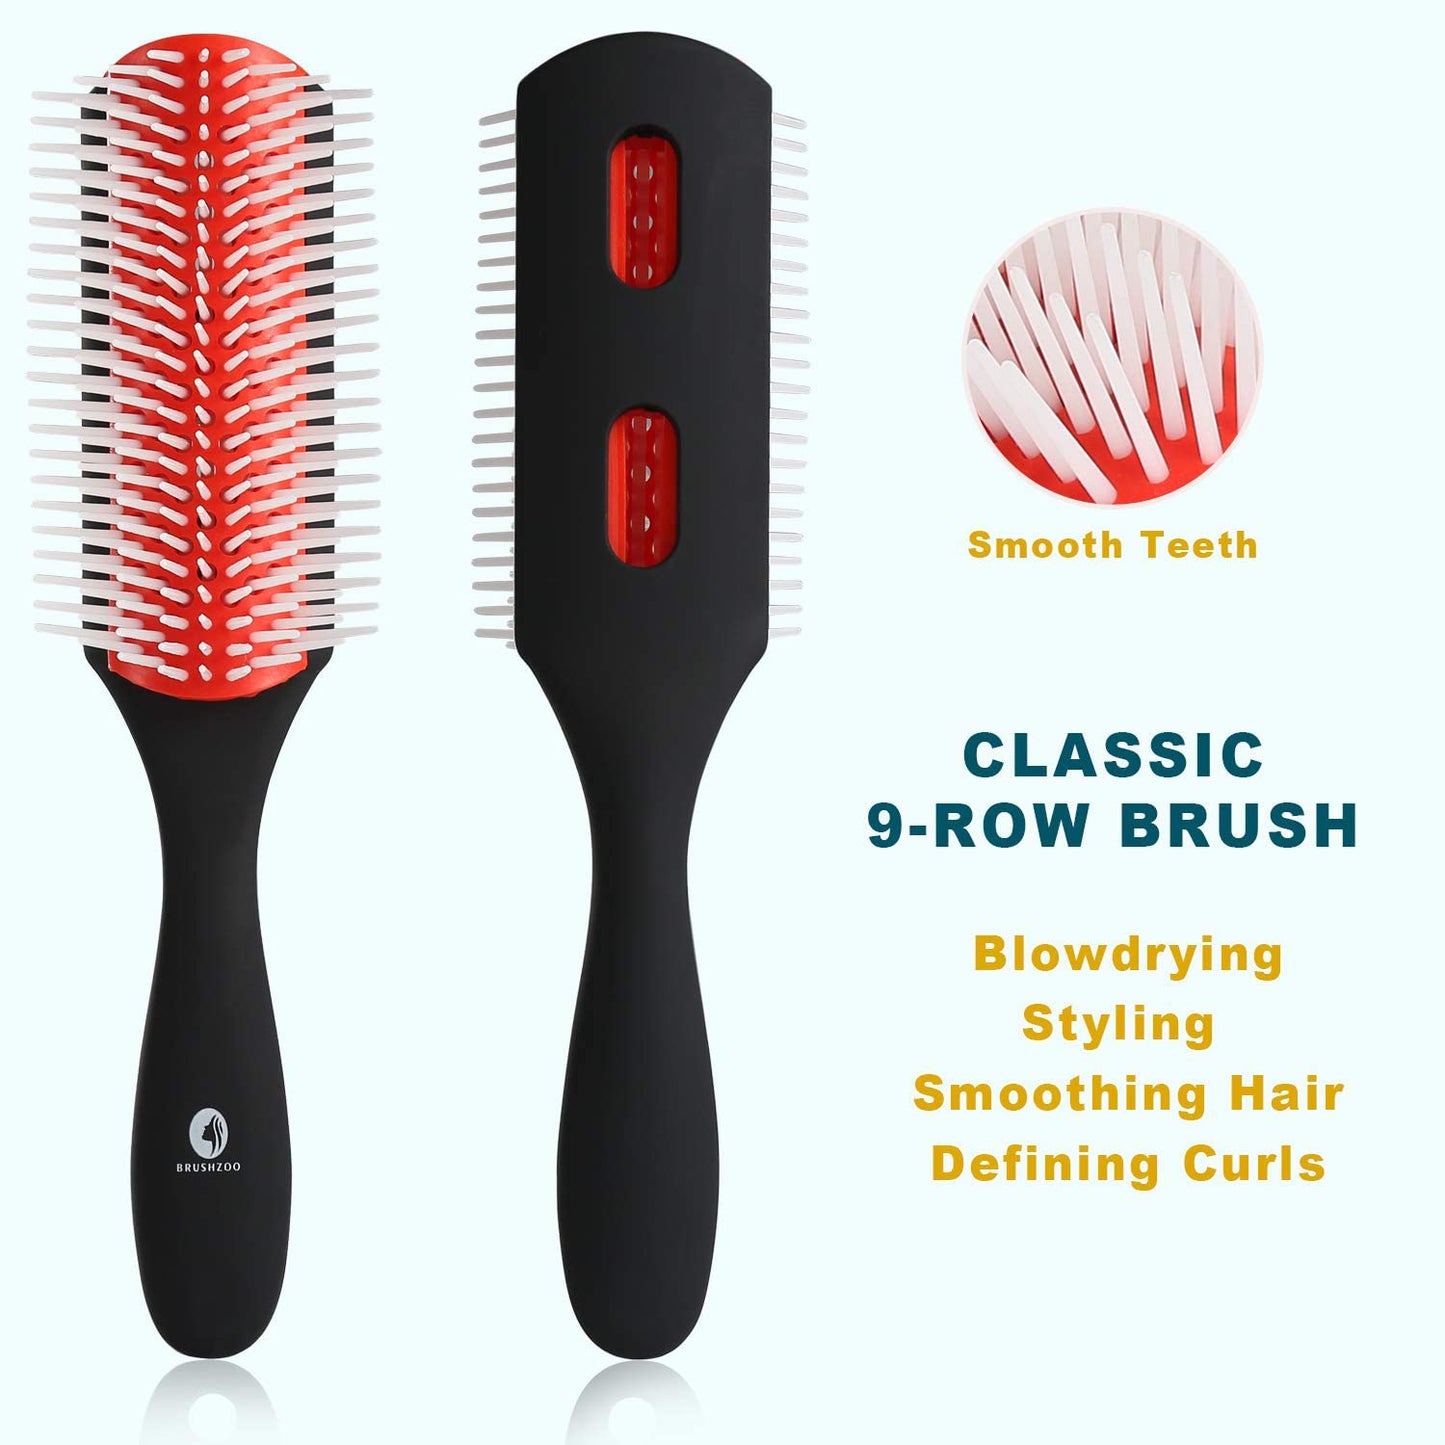 O BRUSHZOO Detangler Hair Brush for Curly Hair, Detangling Brush for Wet Dry Thick Wavy Hair, Curly Hair Brushes for Women Men Kids Styling Defining